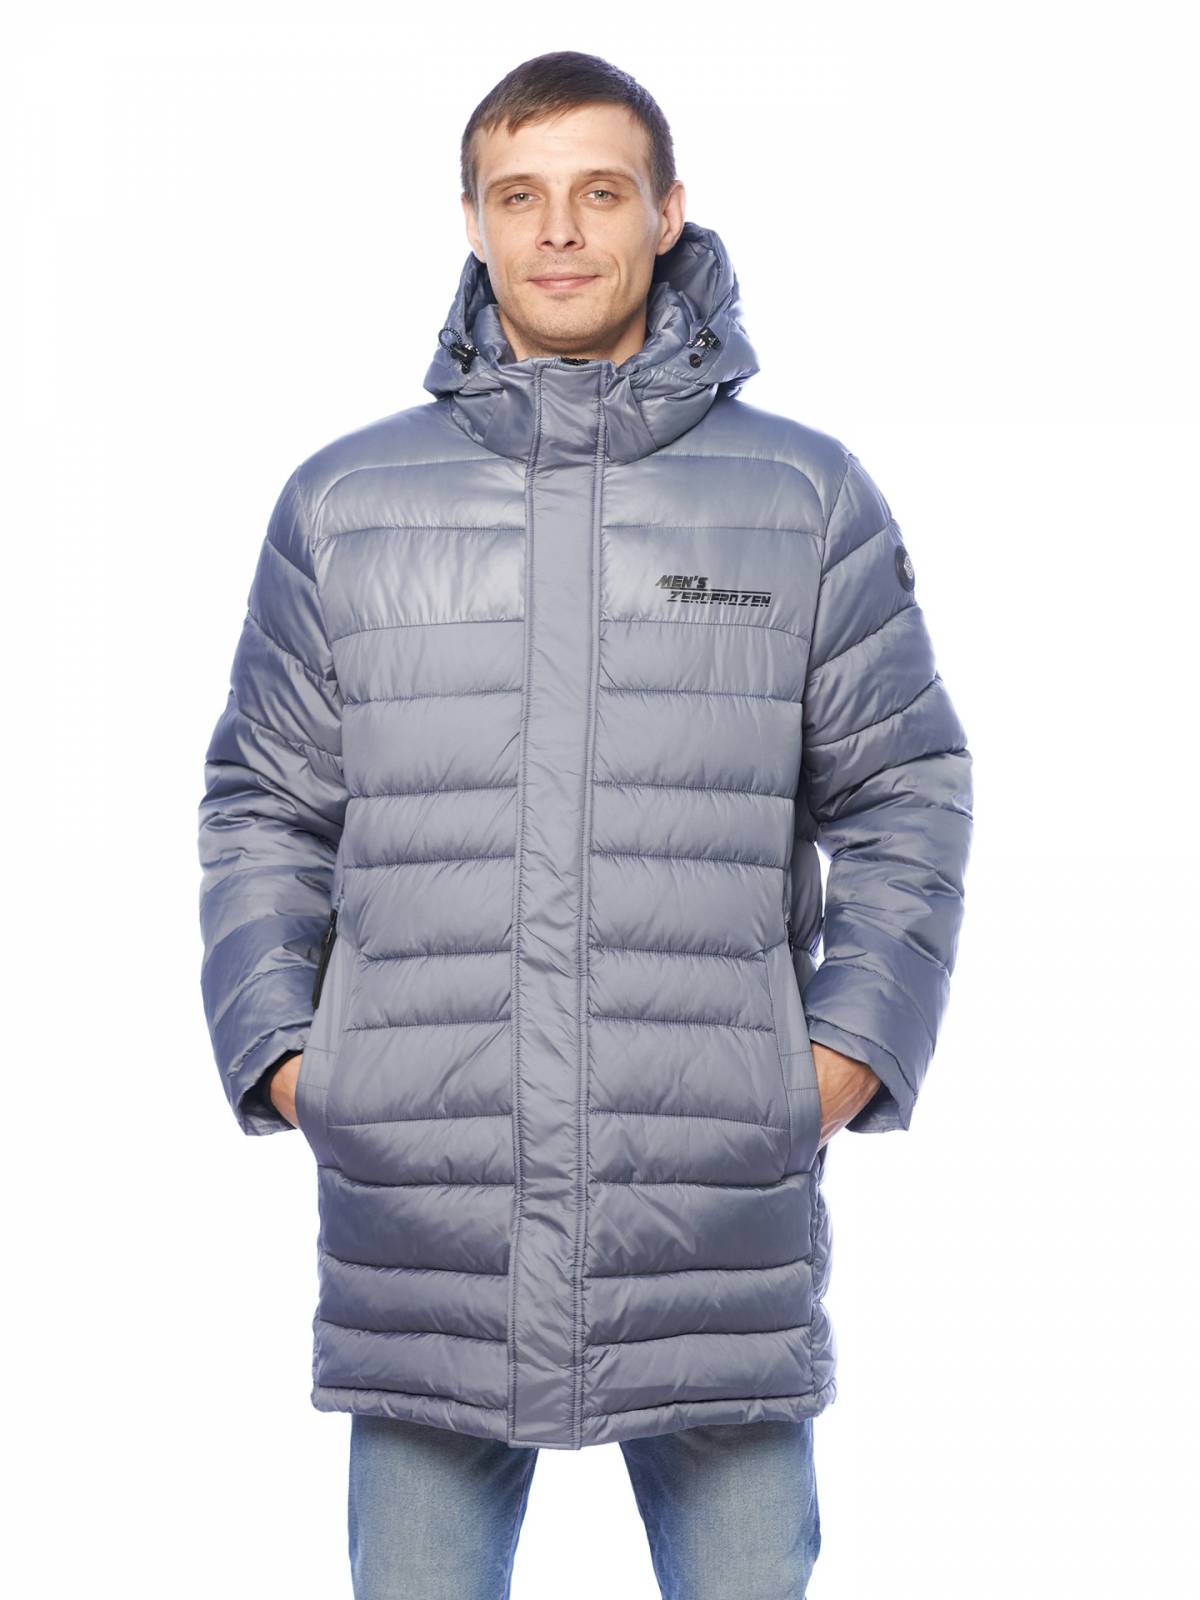 Зимняя куртка мужская Zero Frozen 4205 серая 54 RU